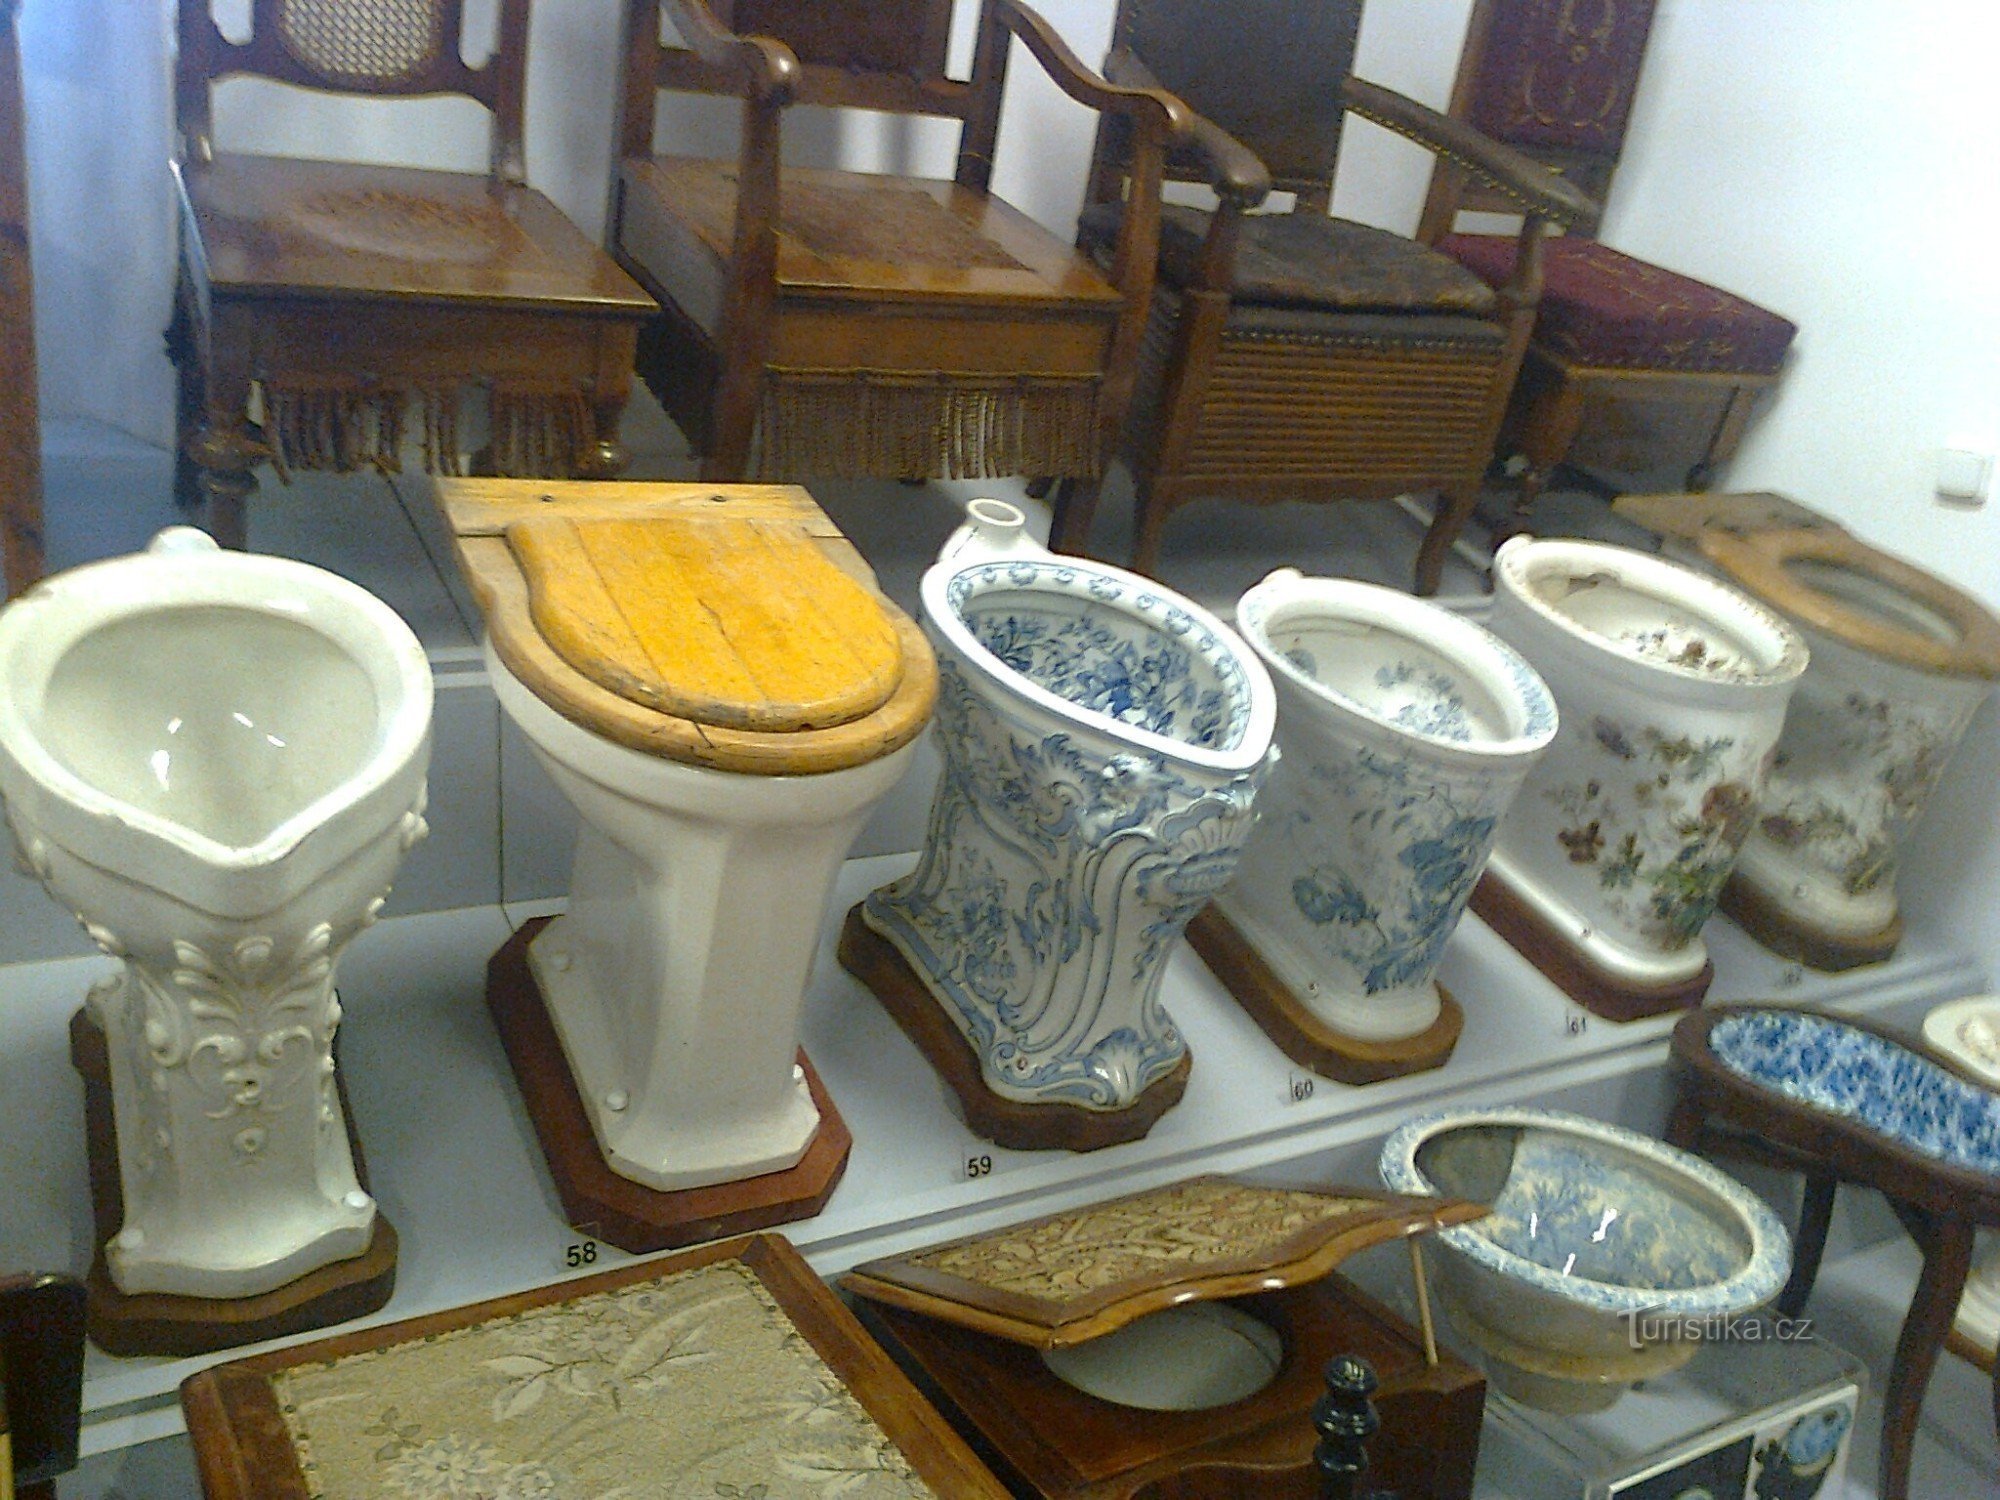 Muzeum nočníků a toalet